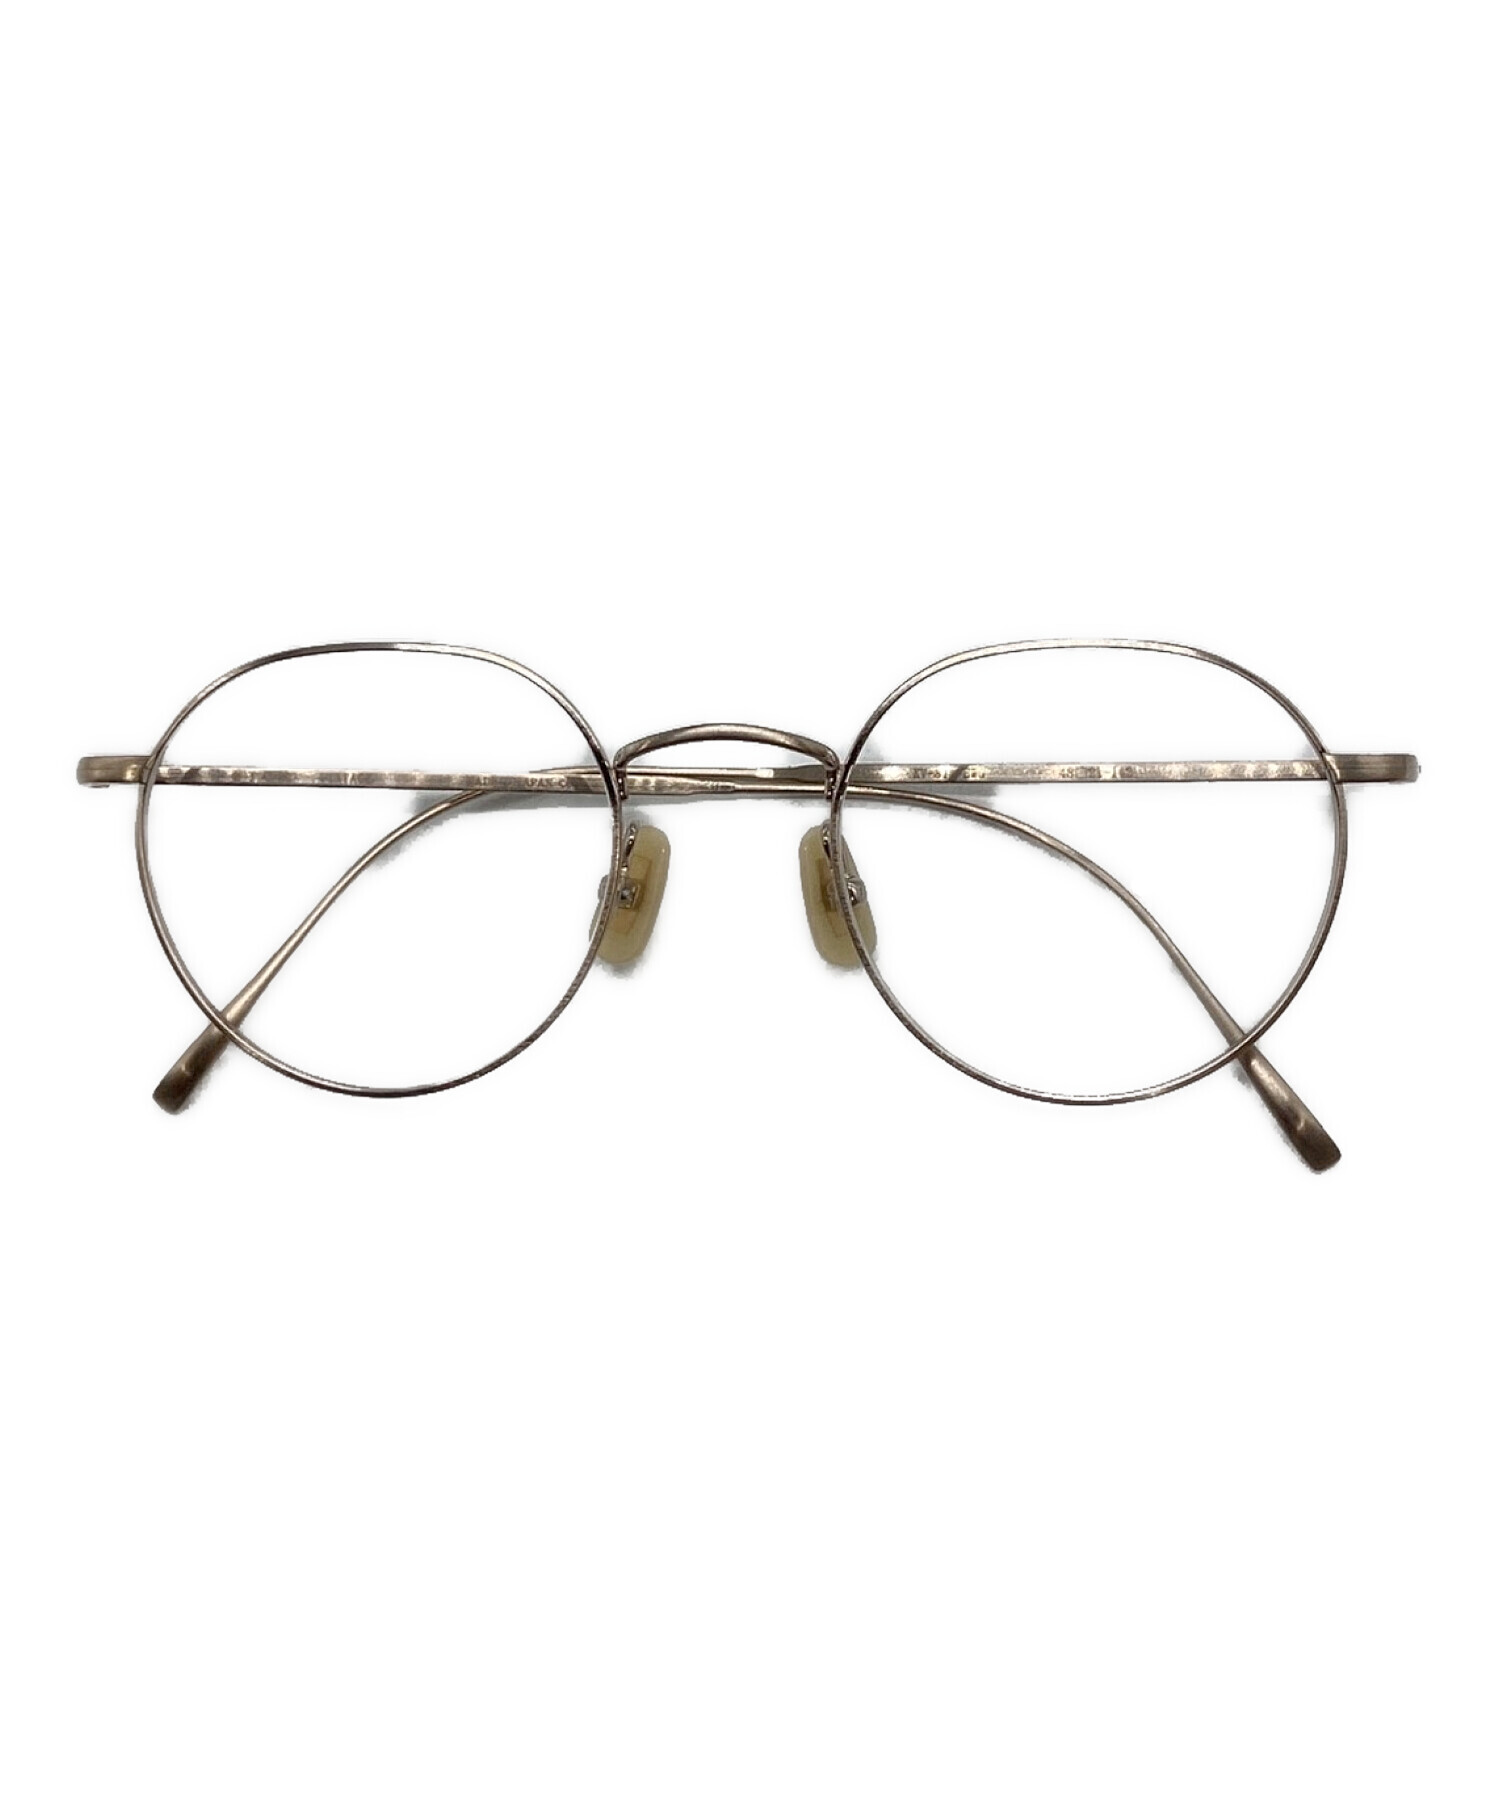 金子眼鏡 (カネコメガネ) 眼鏡 サイズ:48□21-142